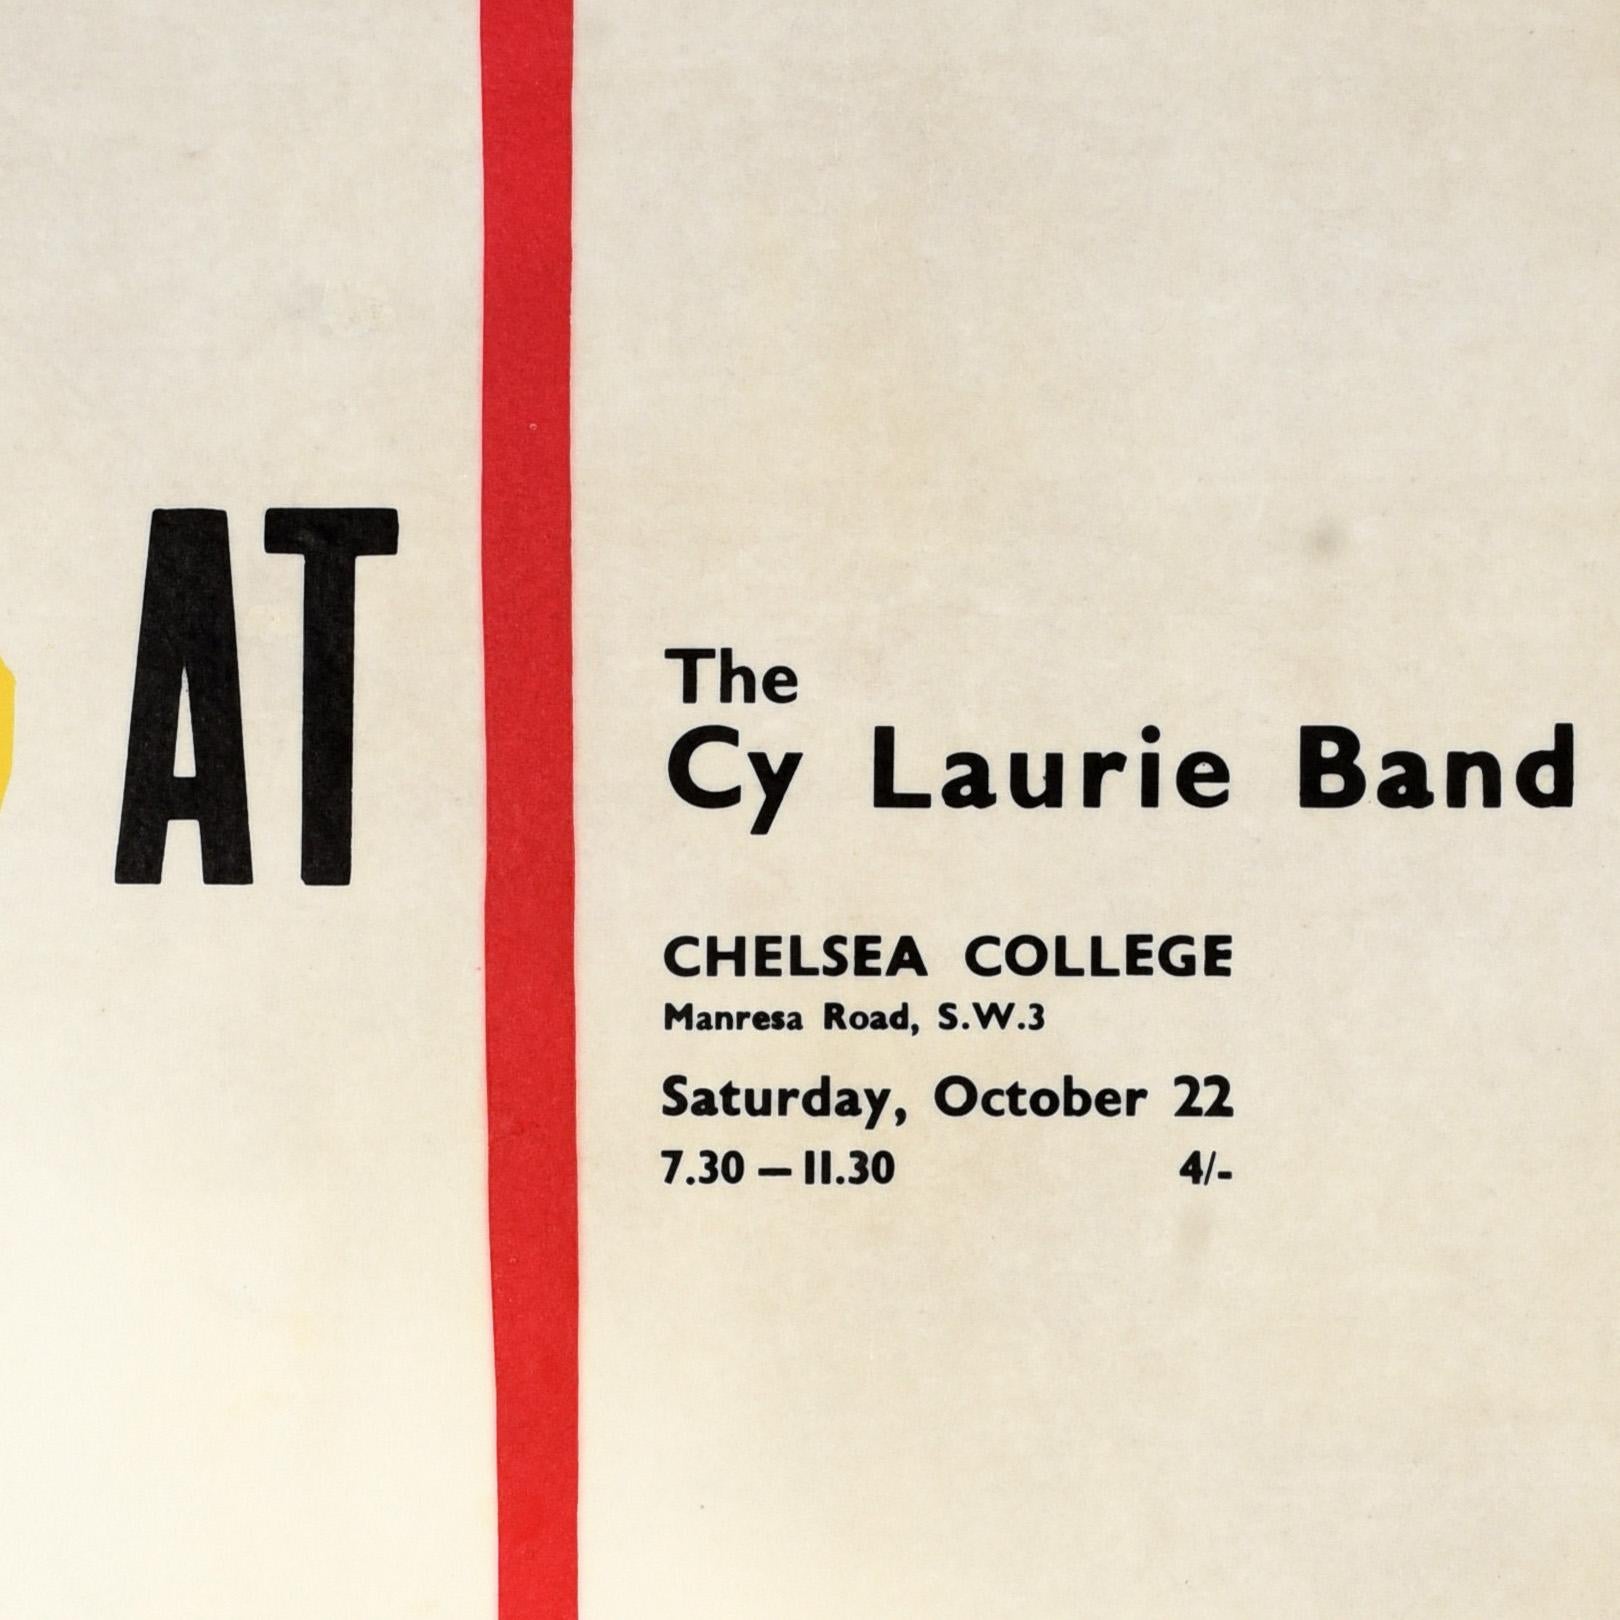 Original Vintage Musikplakat Werbung Jazz At Chelsea The Cy Laurie Band performing at Chelsea College Manresa Road SW3 from 7:30-11:30 on Saturday 22 October tickets 4/- mit einem großen grafischen Design von einem roten Pfeil nach unten und gelben